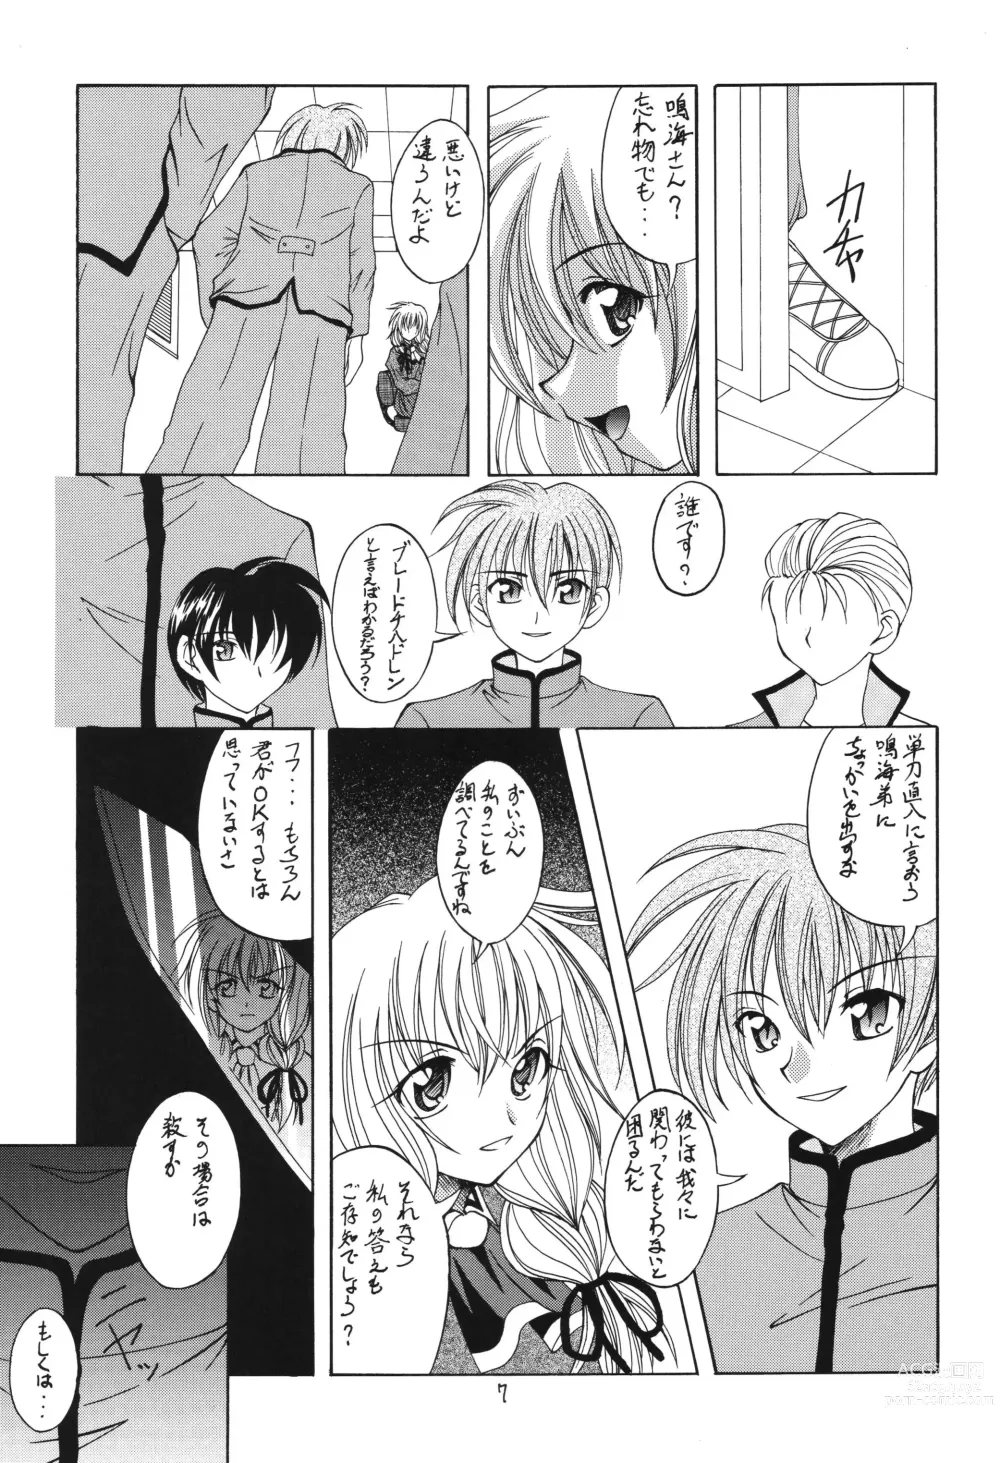 Page 7 of doujinshi Fuyu no Arashi ~Valhalla Dainishou~